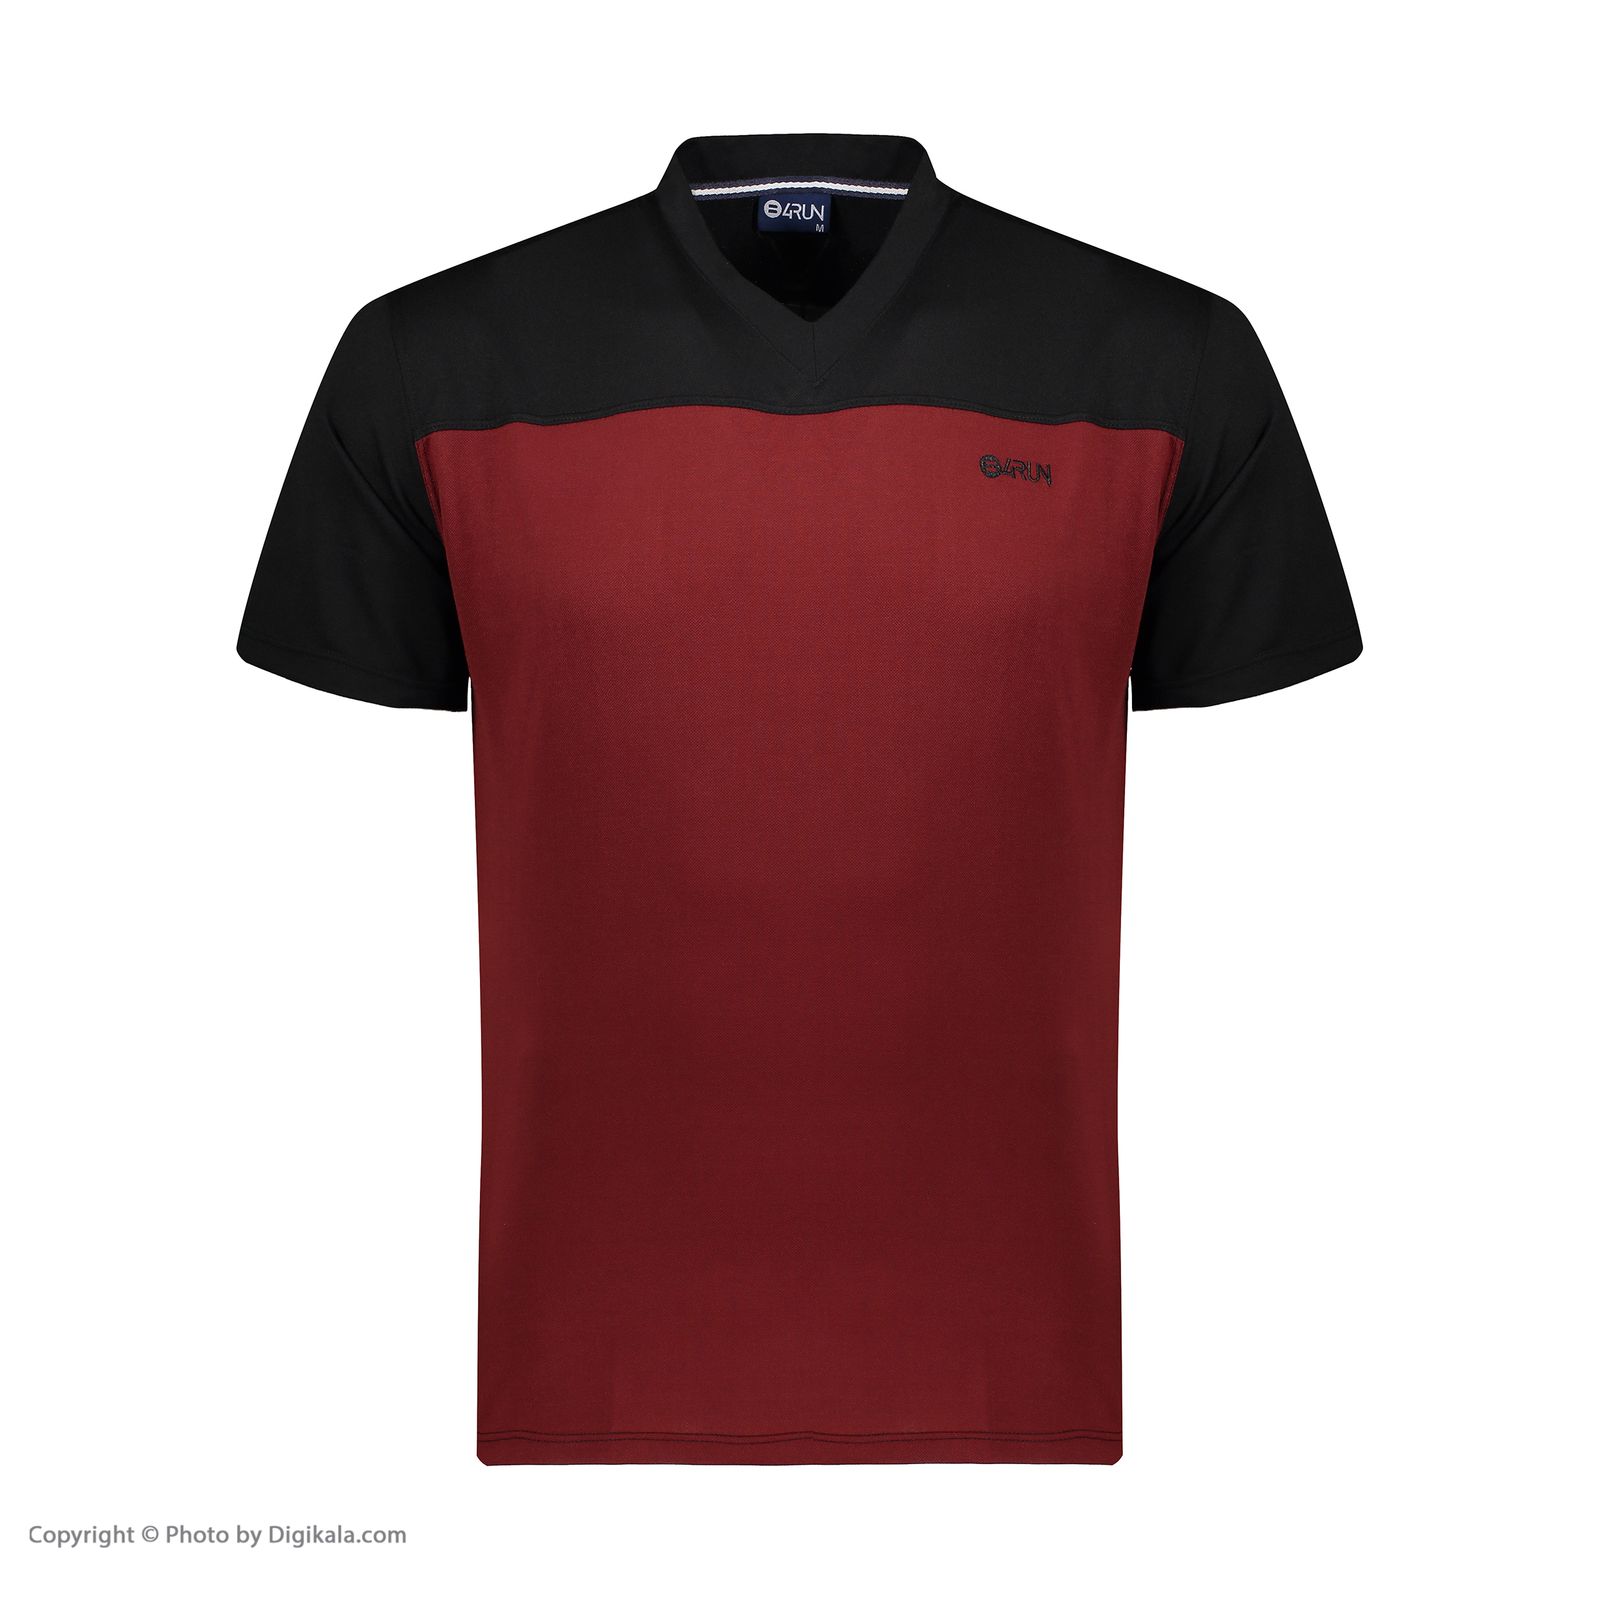 تی شرت ورزشی مردانه بی فور ران مدل 980317-9974 - مشکی - قرمز - 2